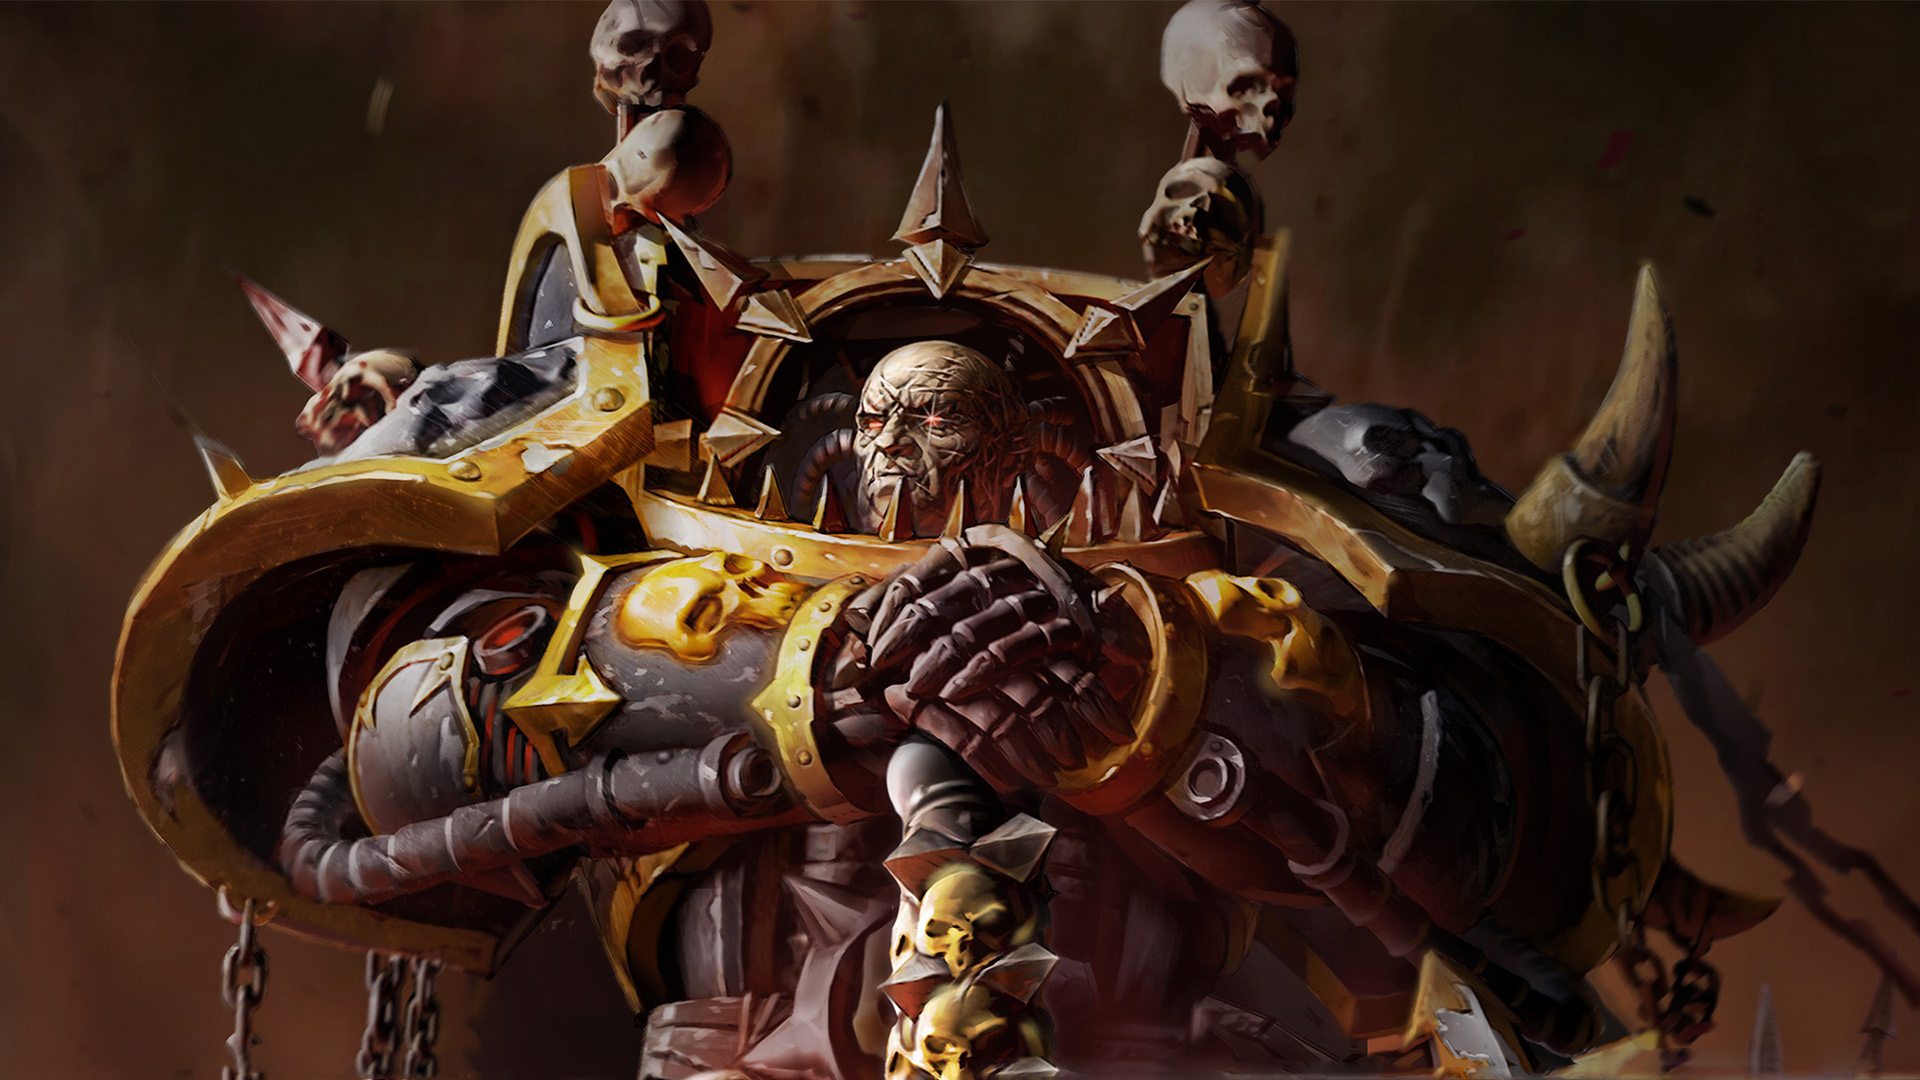 Warhammer 40,000: Dawn of War II: Retribution